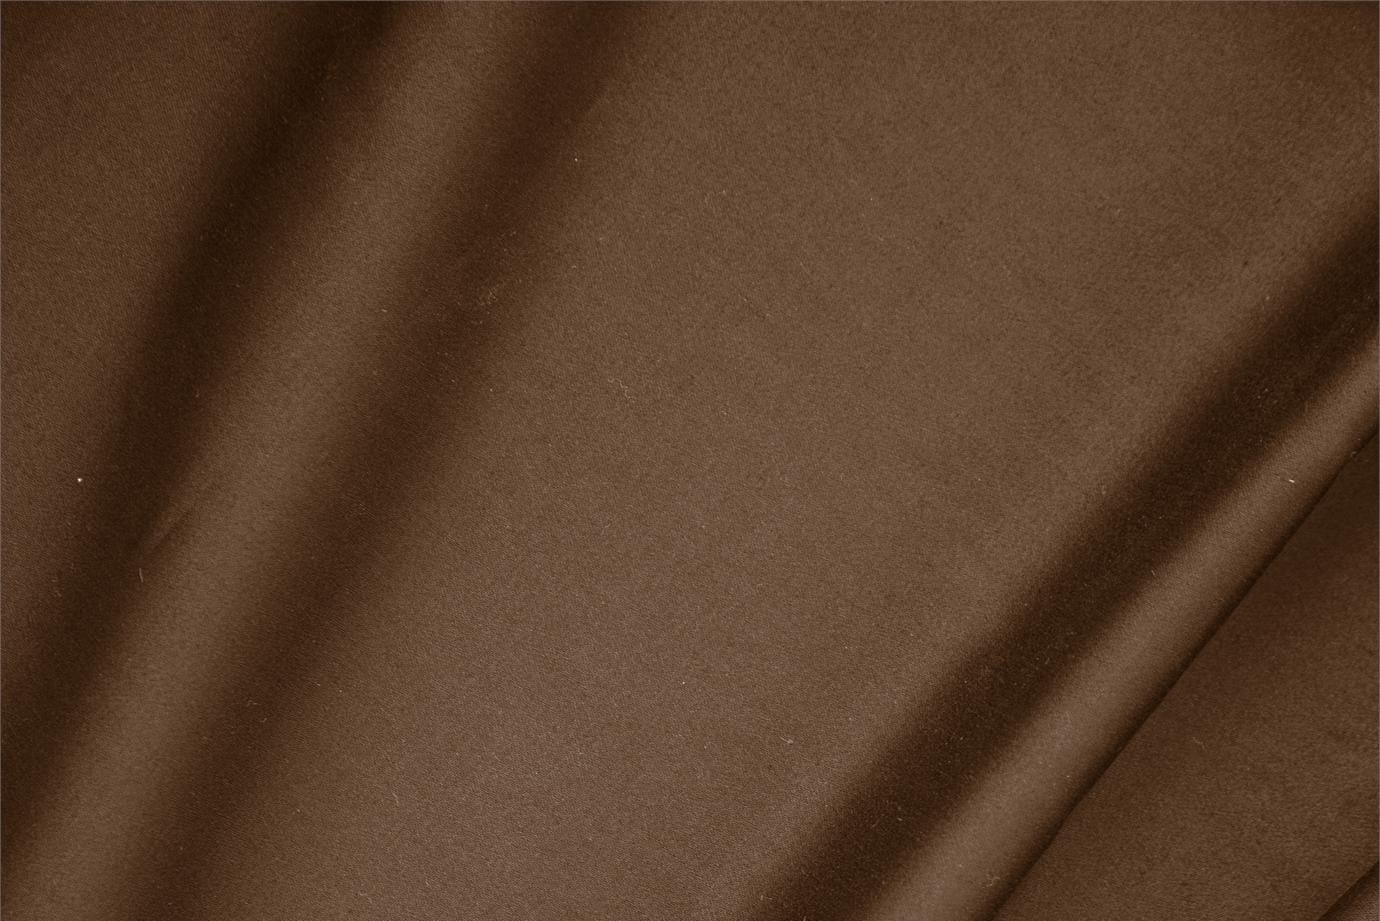 Tessuto Raso di Cotone Stretch Marrone Cacao in Cotone, Stretch per abbigliamento